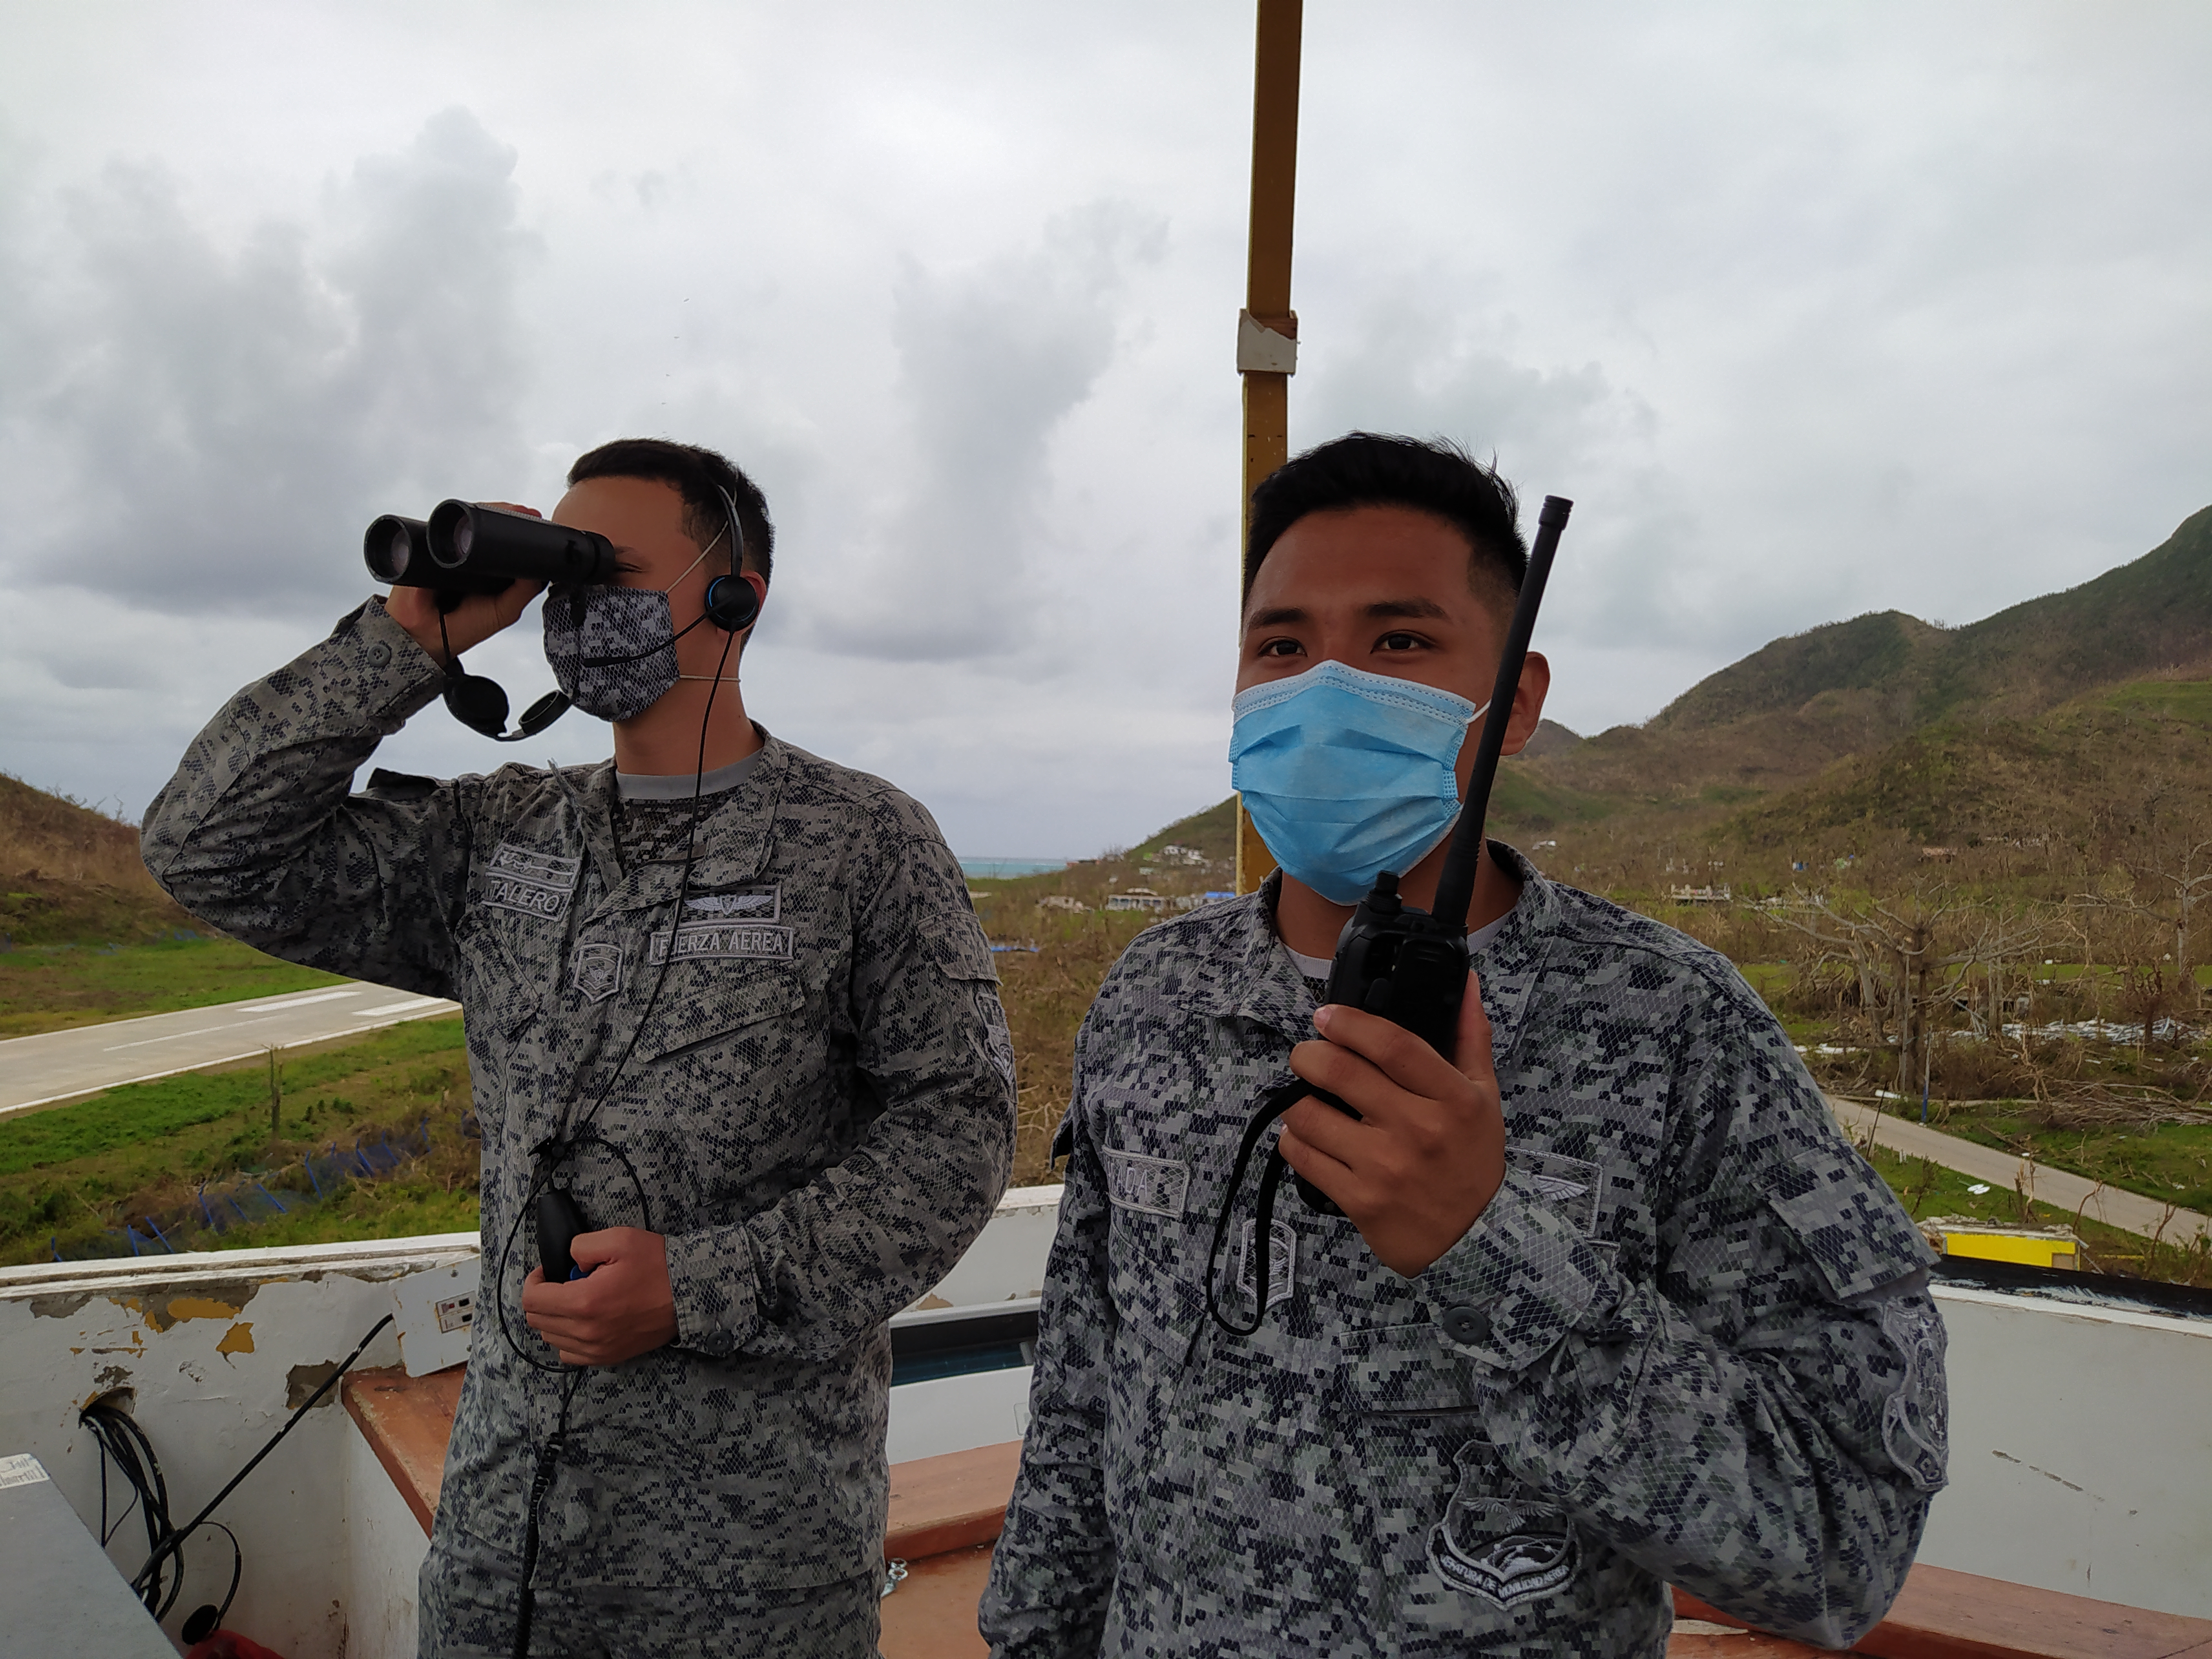 Servicios de Navegación Aérea en la Isla de Providencia son asumidos provisionalmente por equipo de reacción especializado de su Fuerza Aérea Colombiana